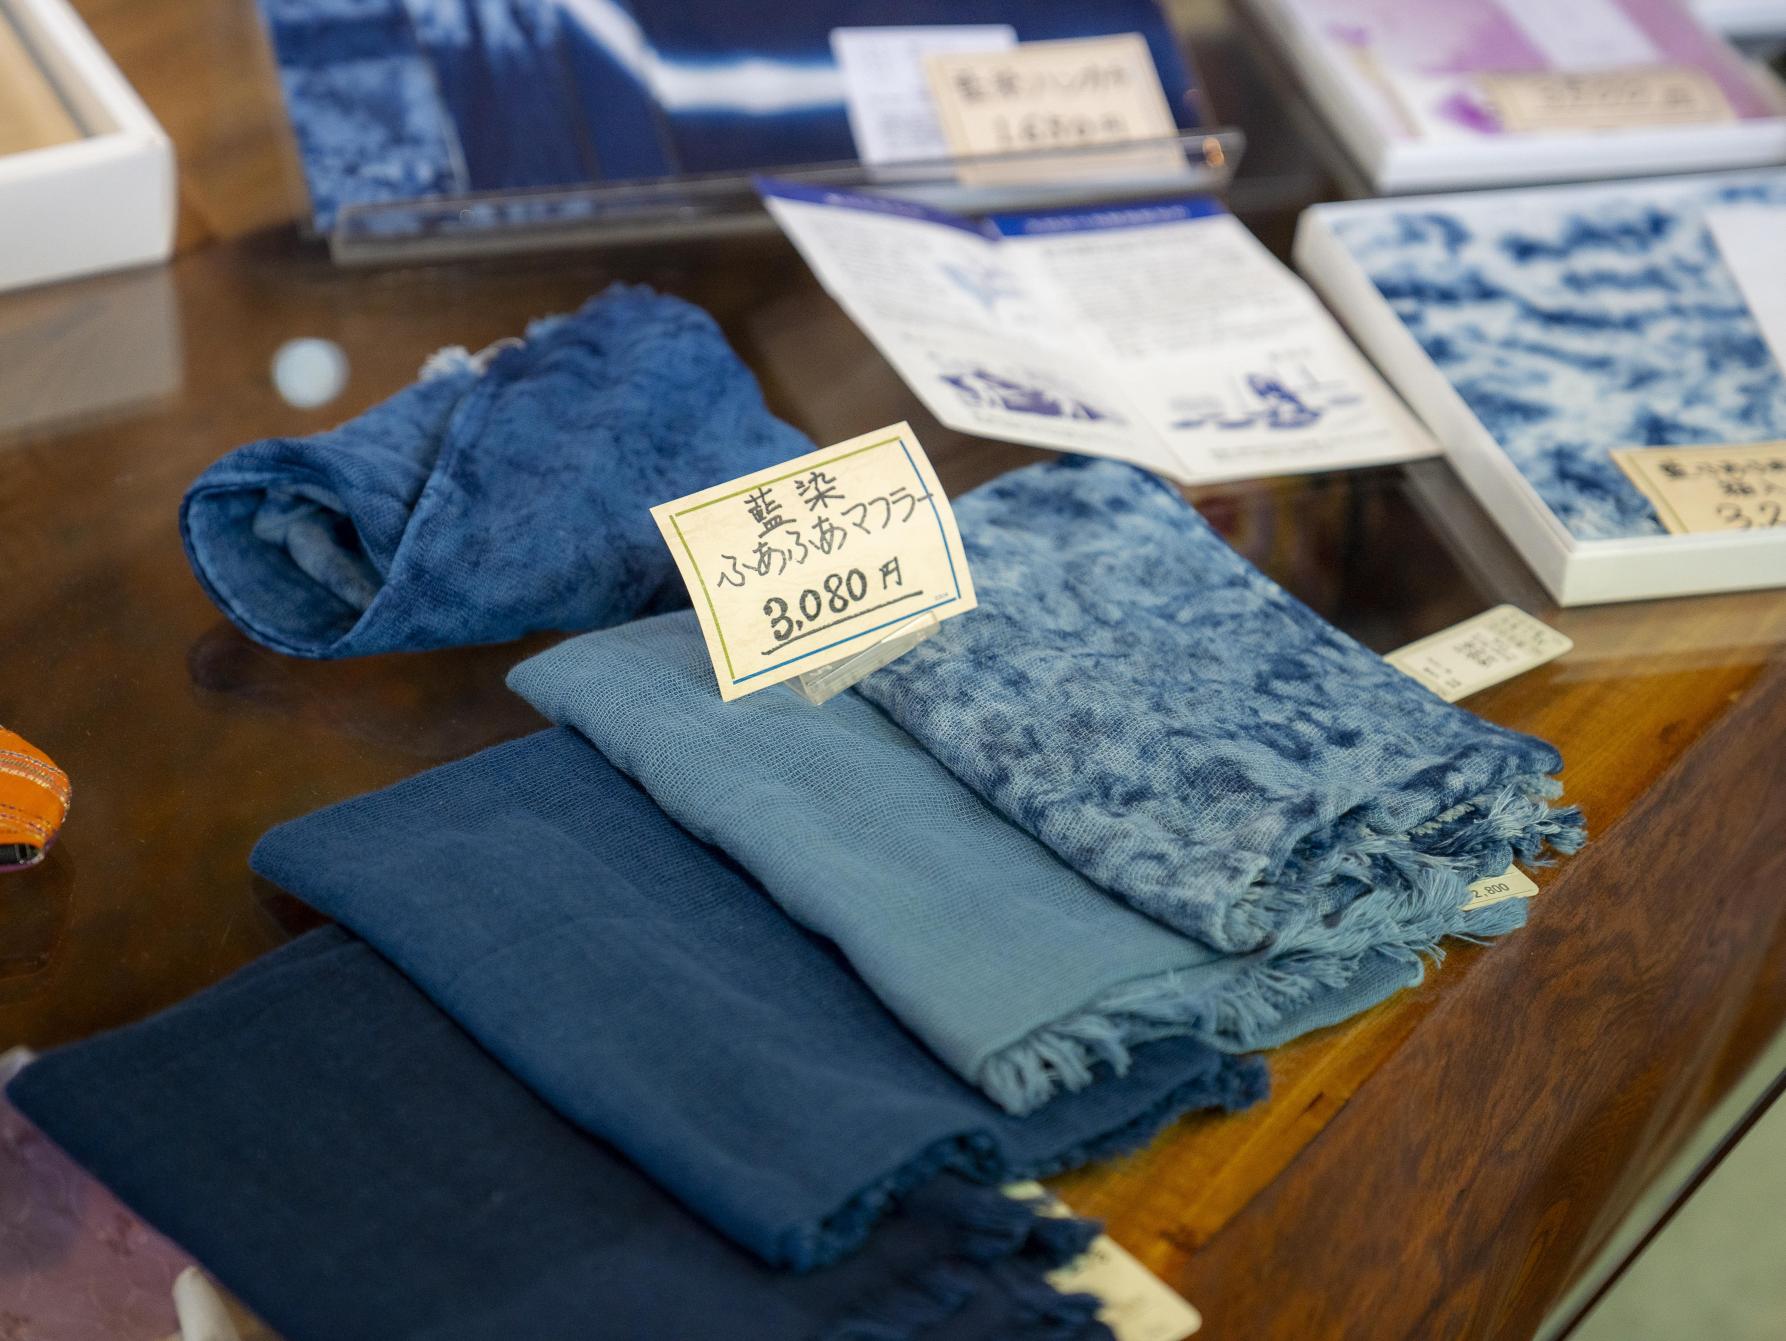 體驗傳統工藝的「藍染柔軟圍巾」-3